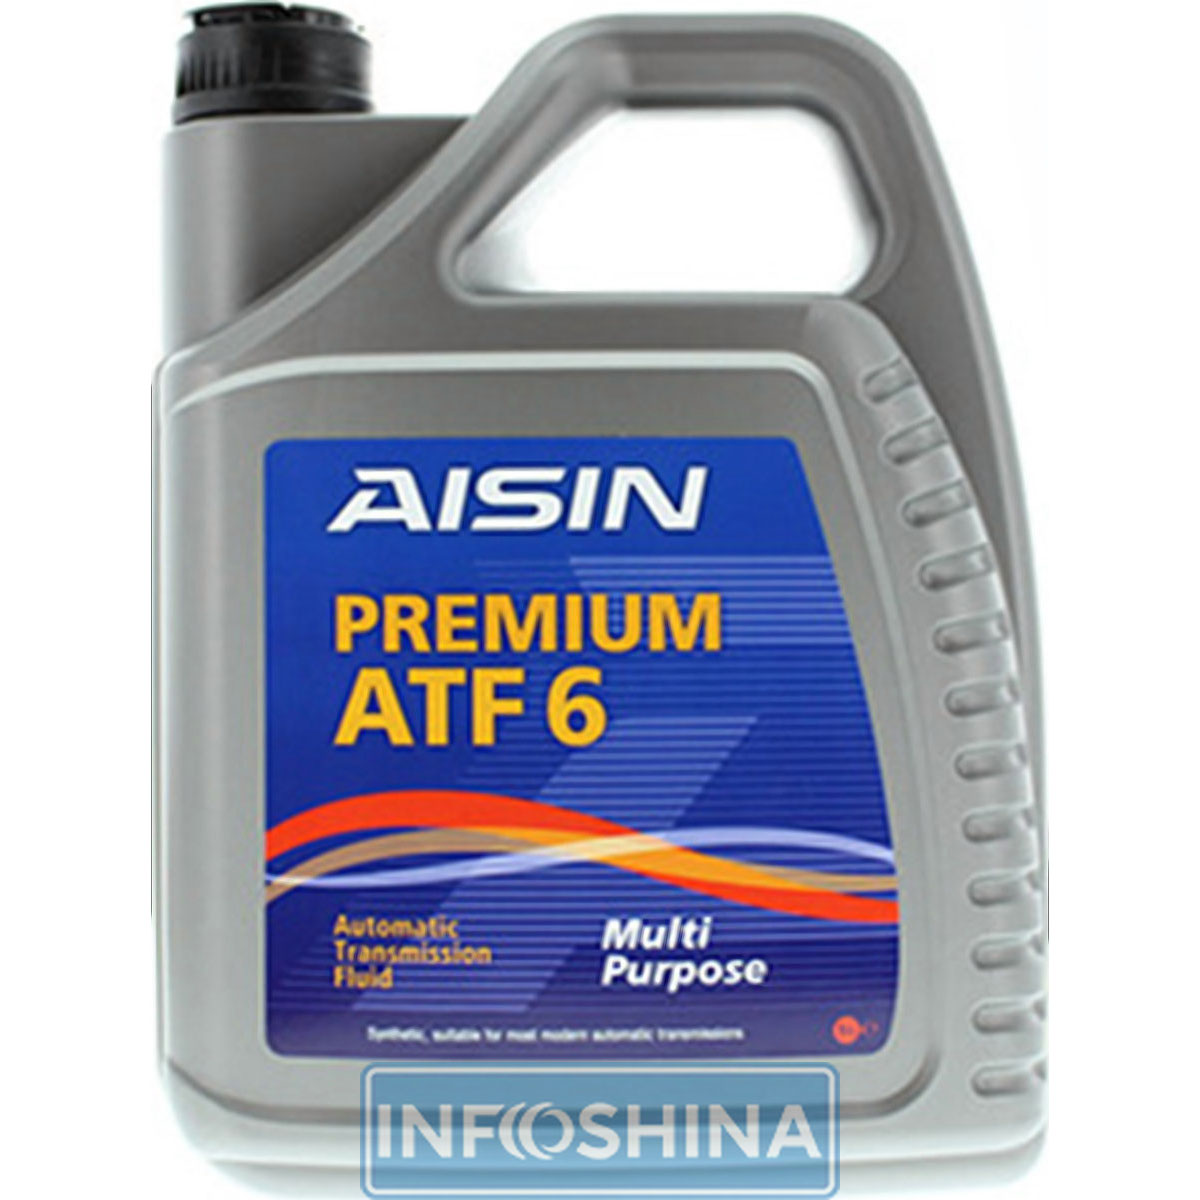 AISIN ATF6 Dexron-III